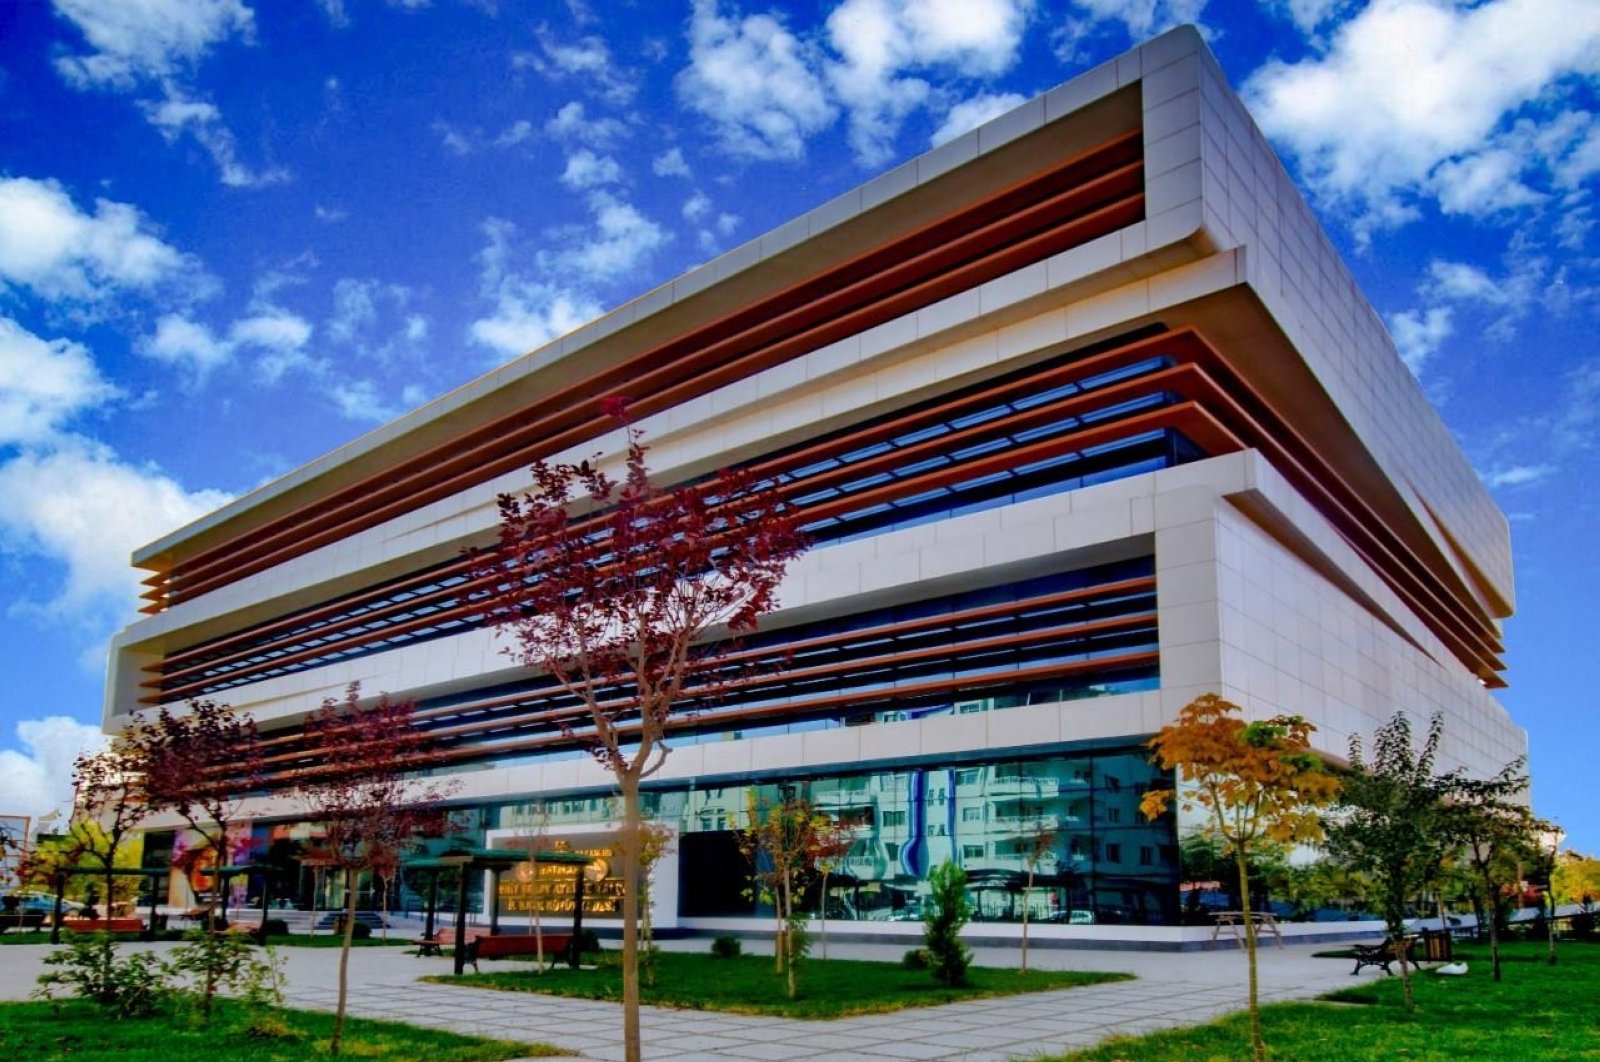 Perpustakaan umum di Turki timur mendapat pengakuan internasional